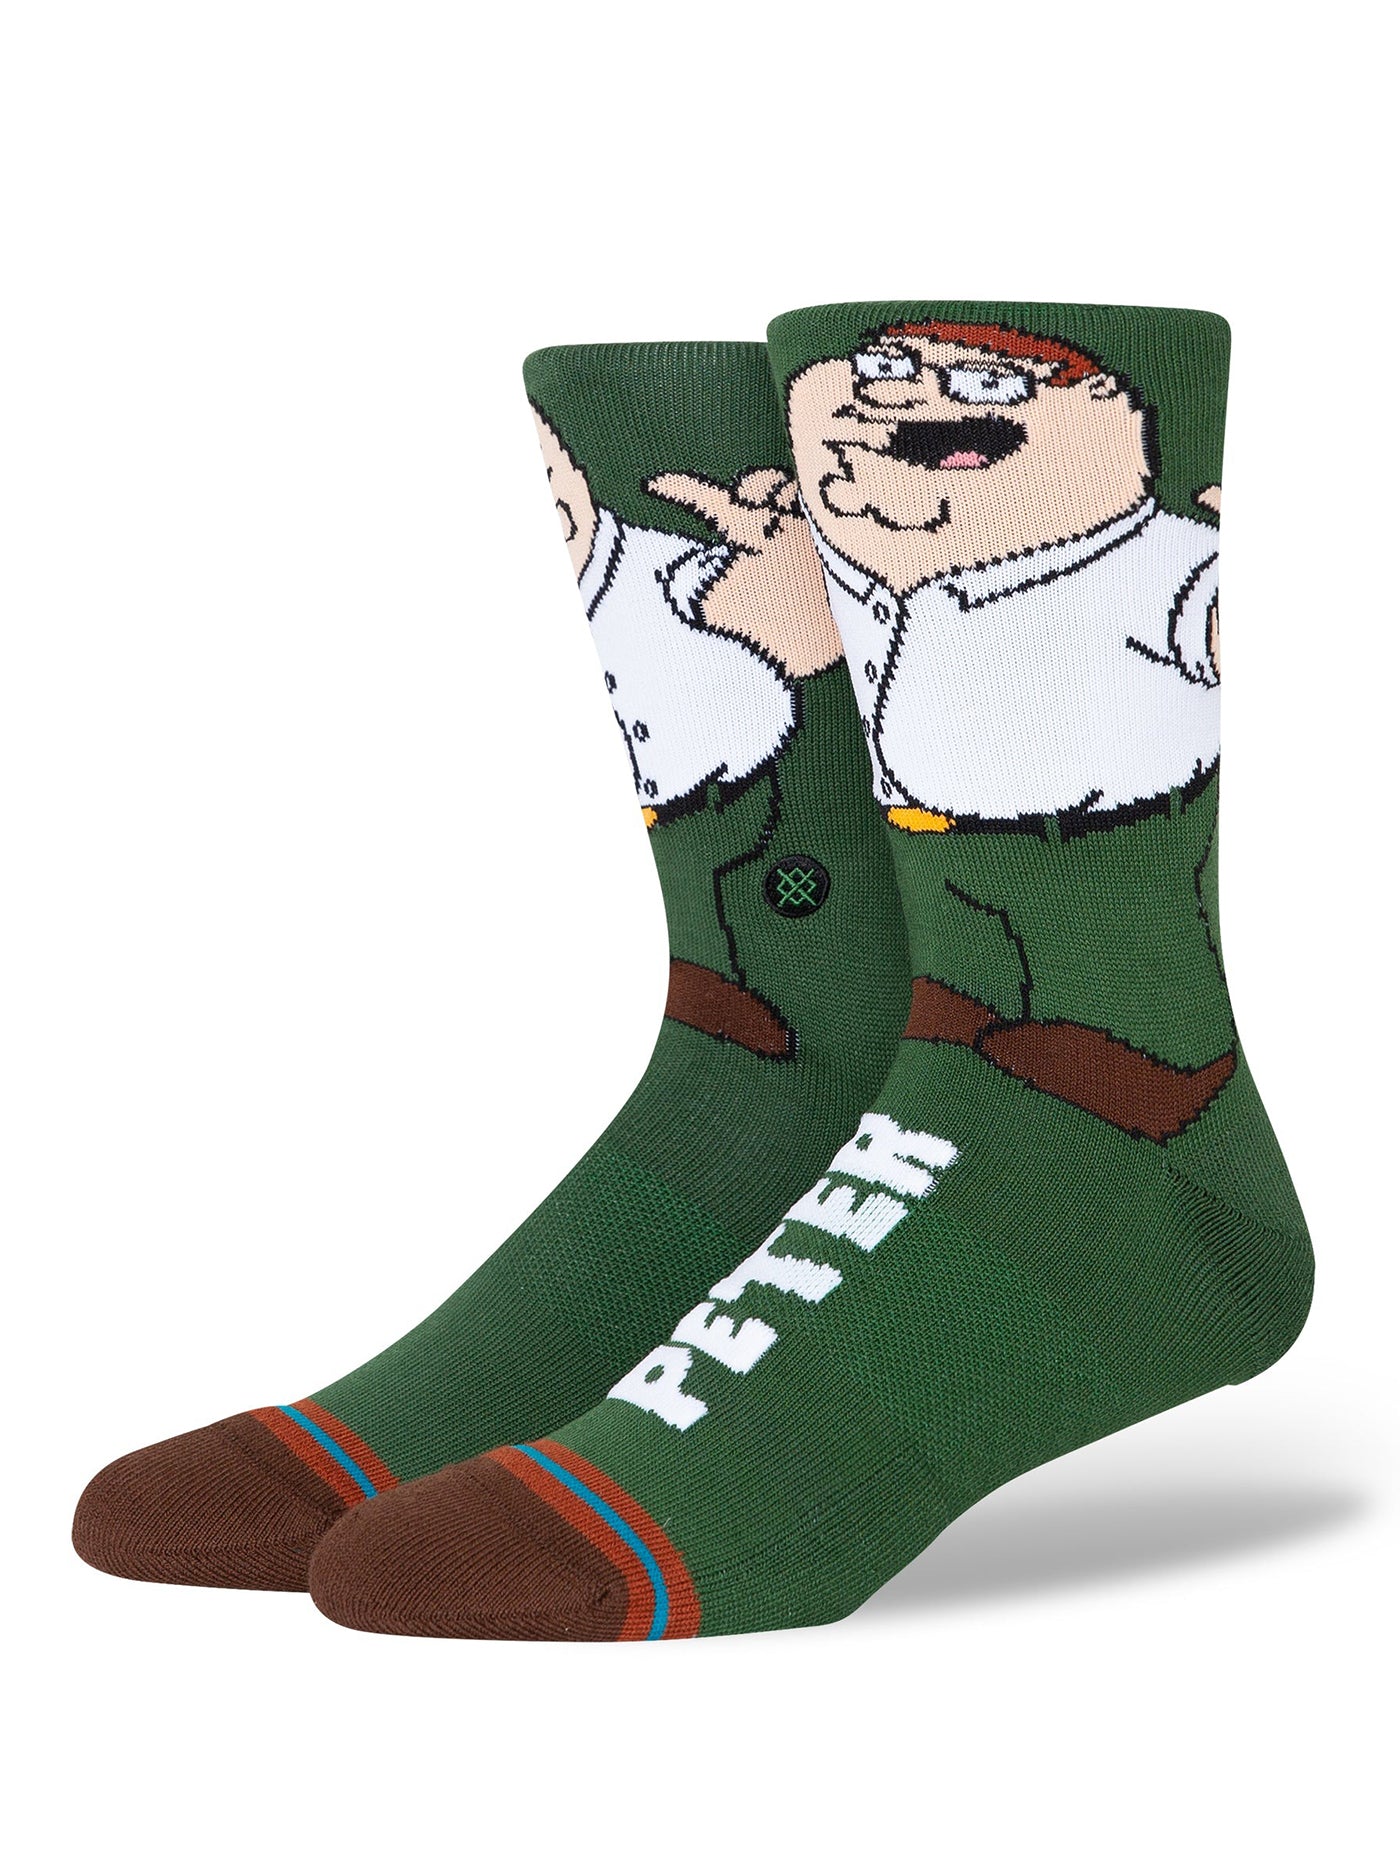 Stance x Family Guy Family Values Socks